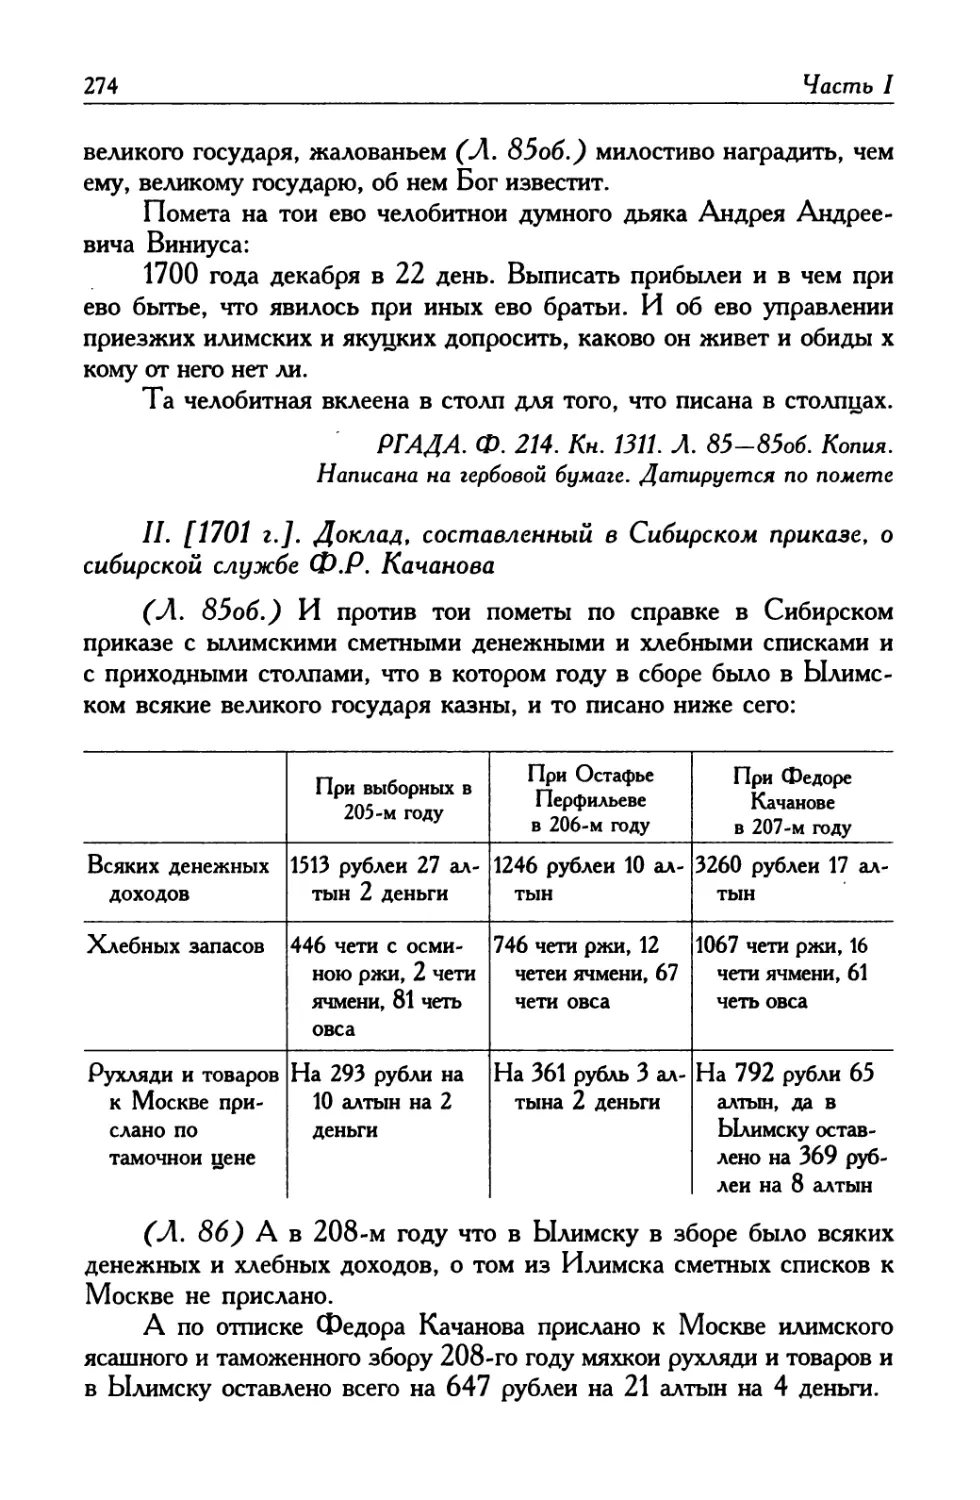 II. [1701 г.]. Доклад, составленный в Сибирском приказе, о сибирской службе Ф. Р. Качанова